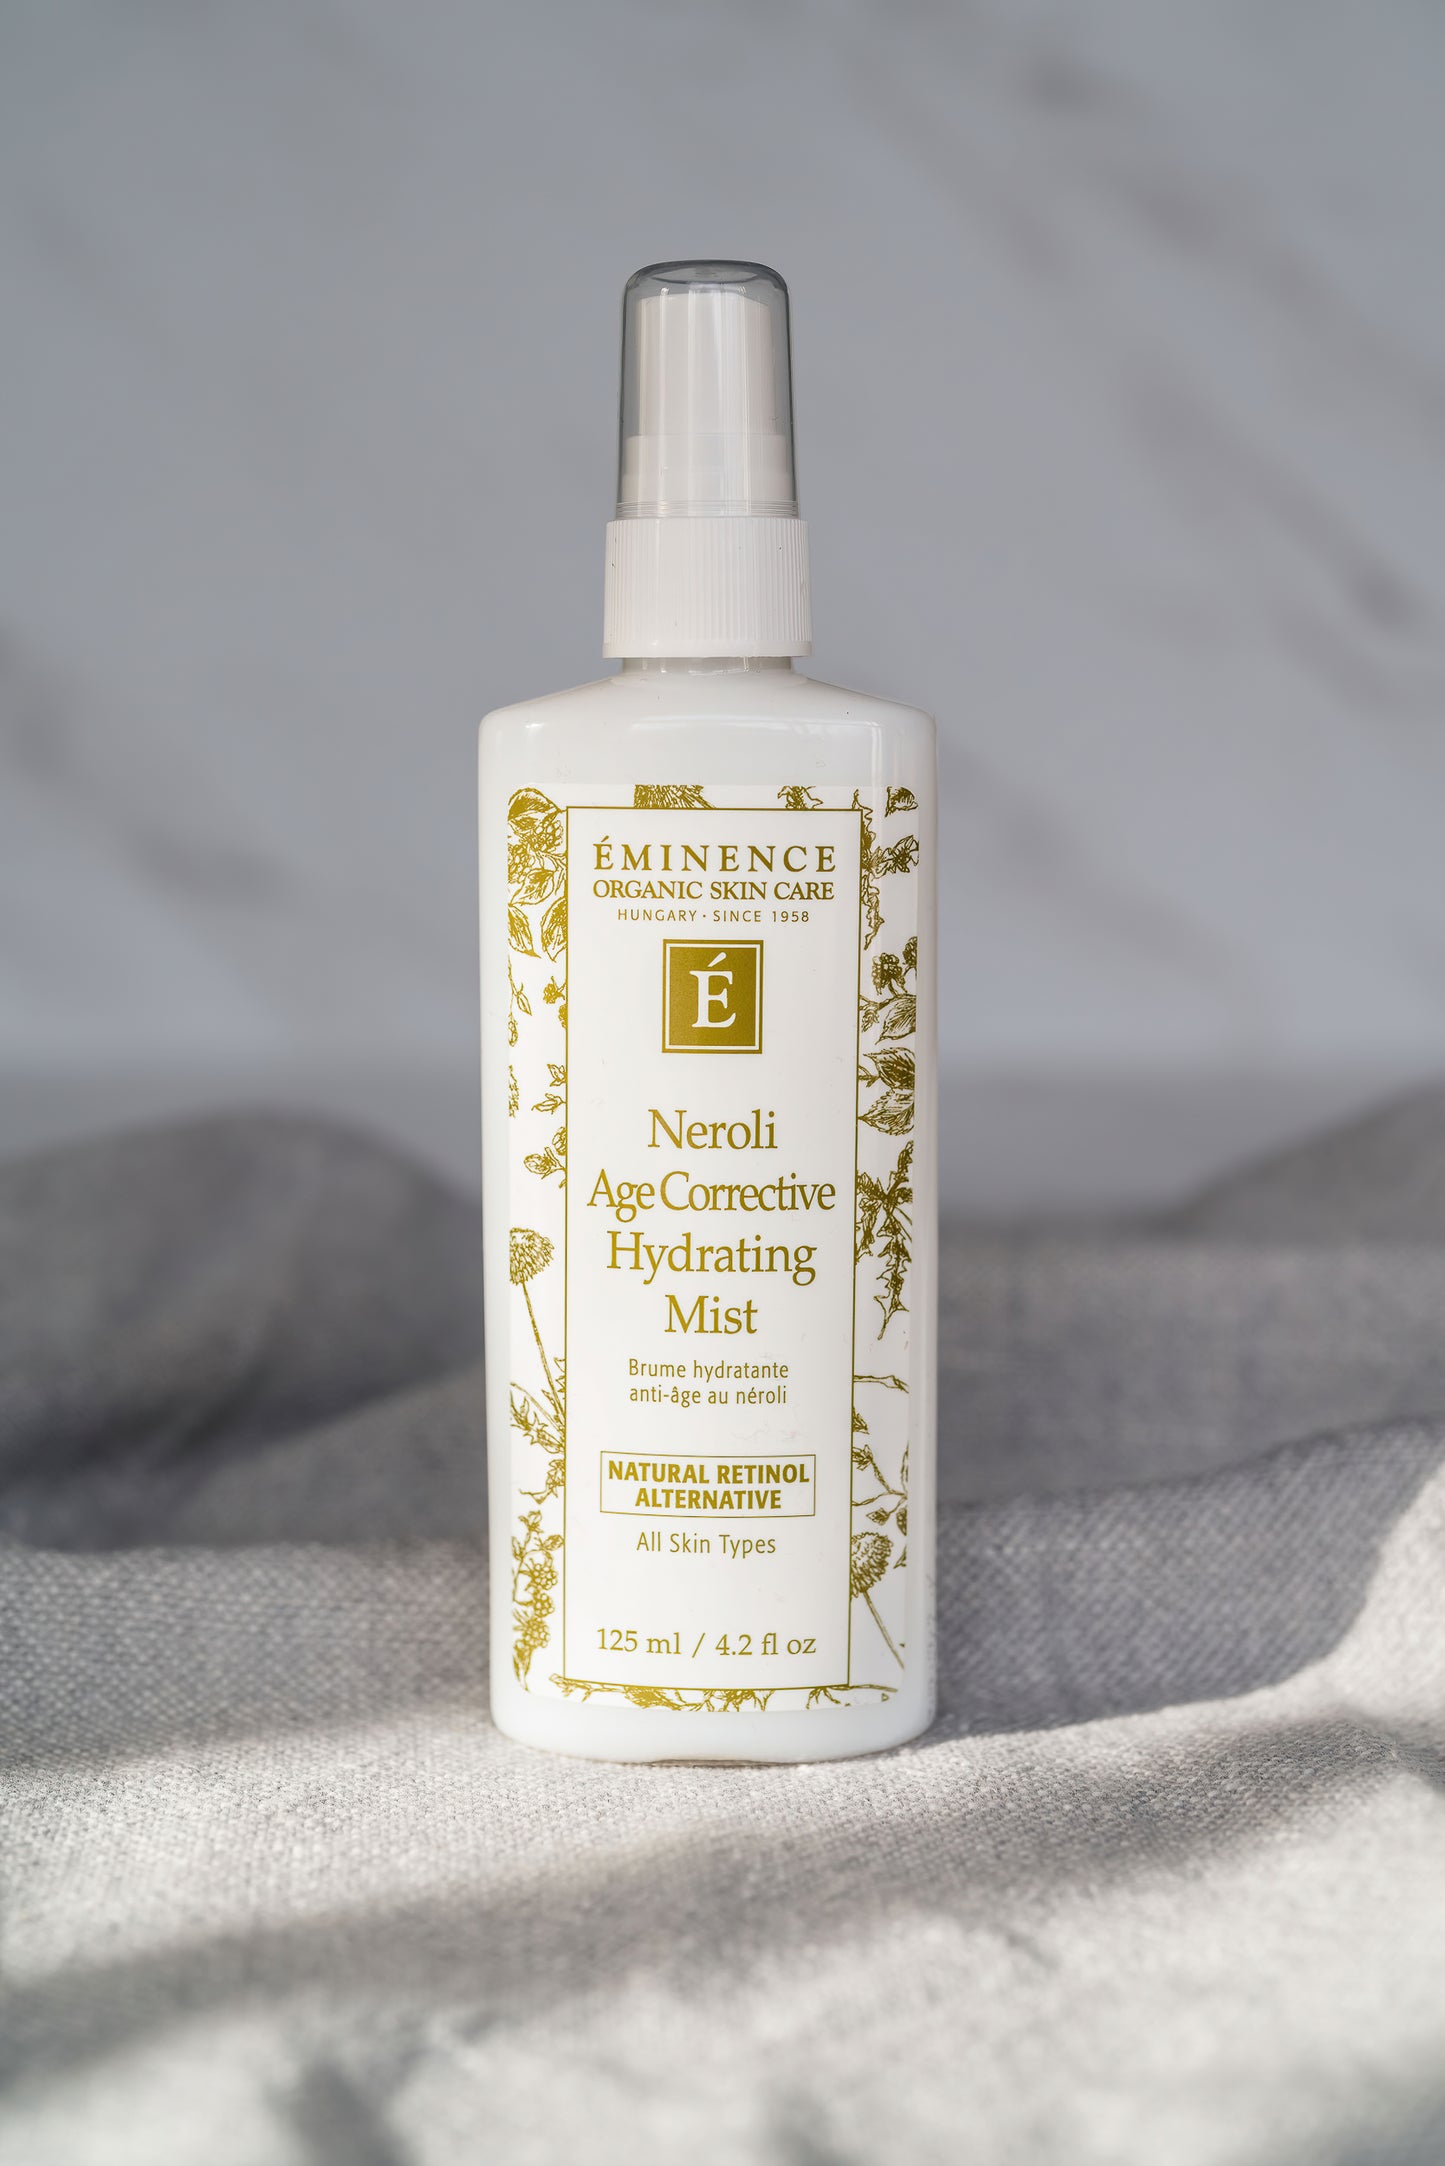 Eminence Organic Skin Care Neroli Age Corrective Hydrating Mist